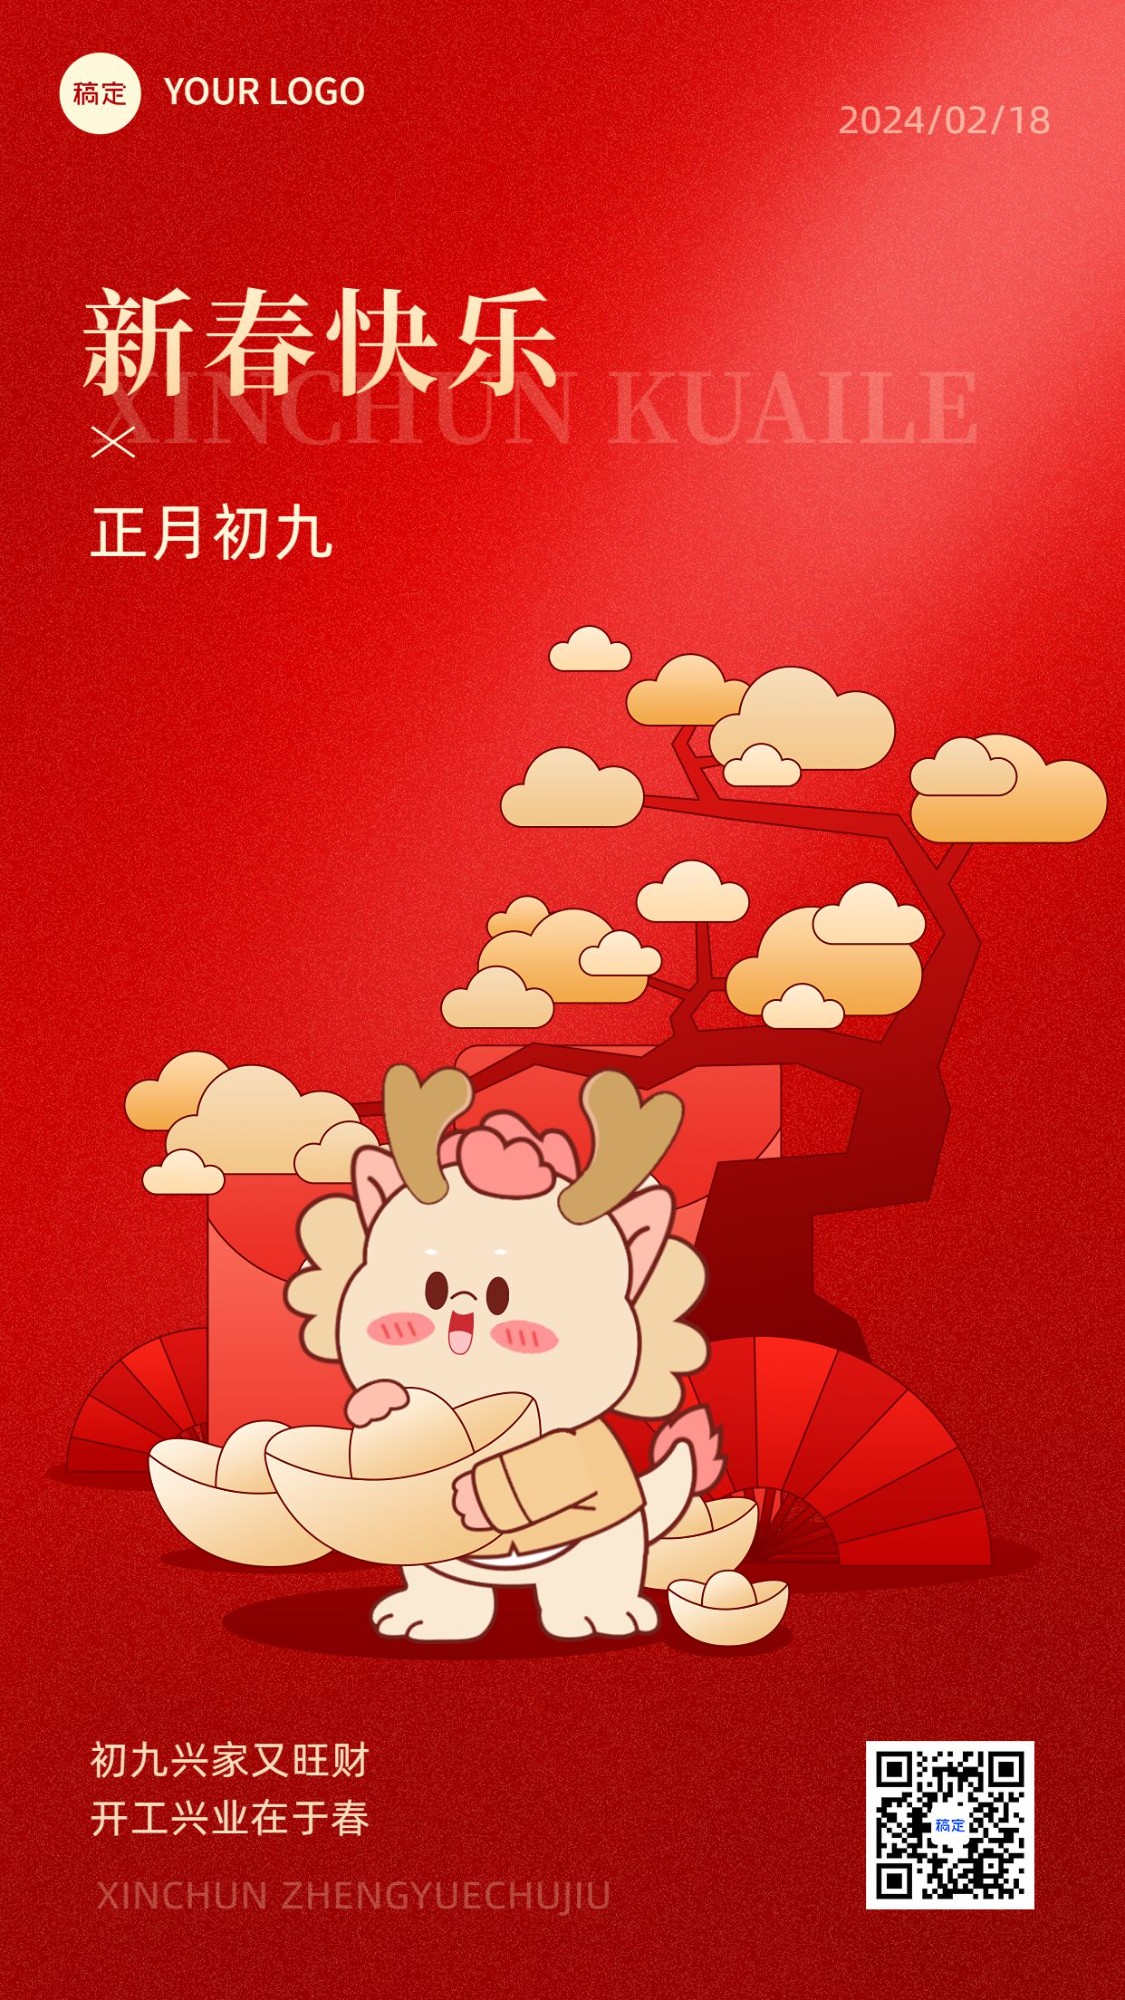 春节新年祝福正月初九套系手机海报预览效果